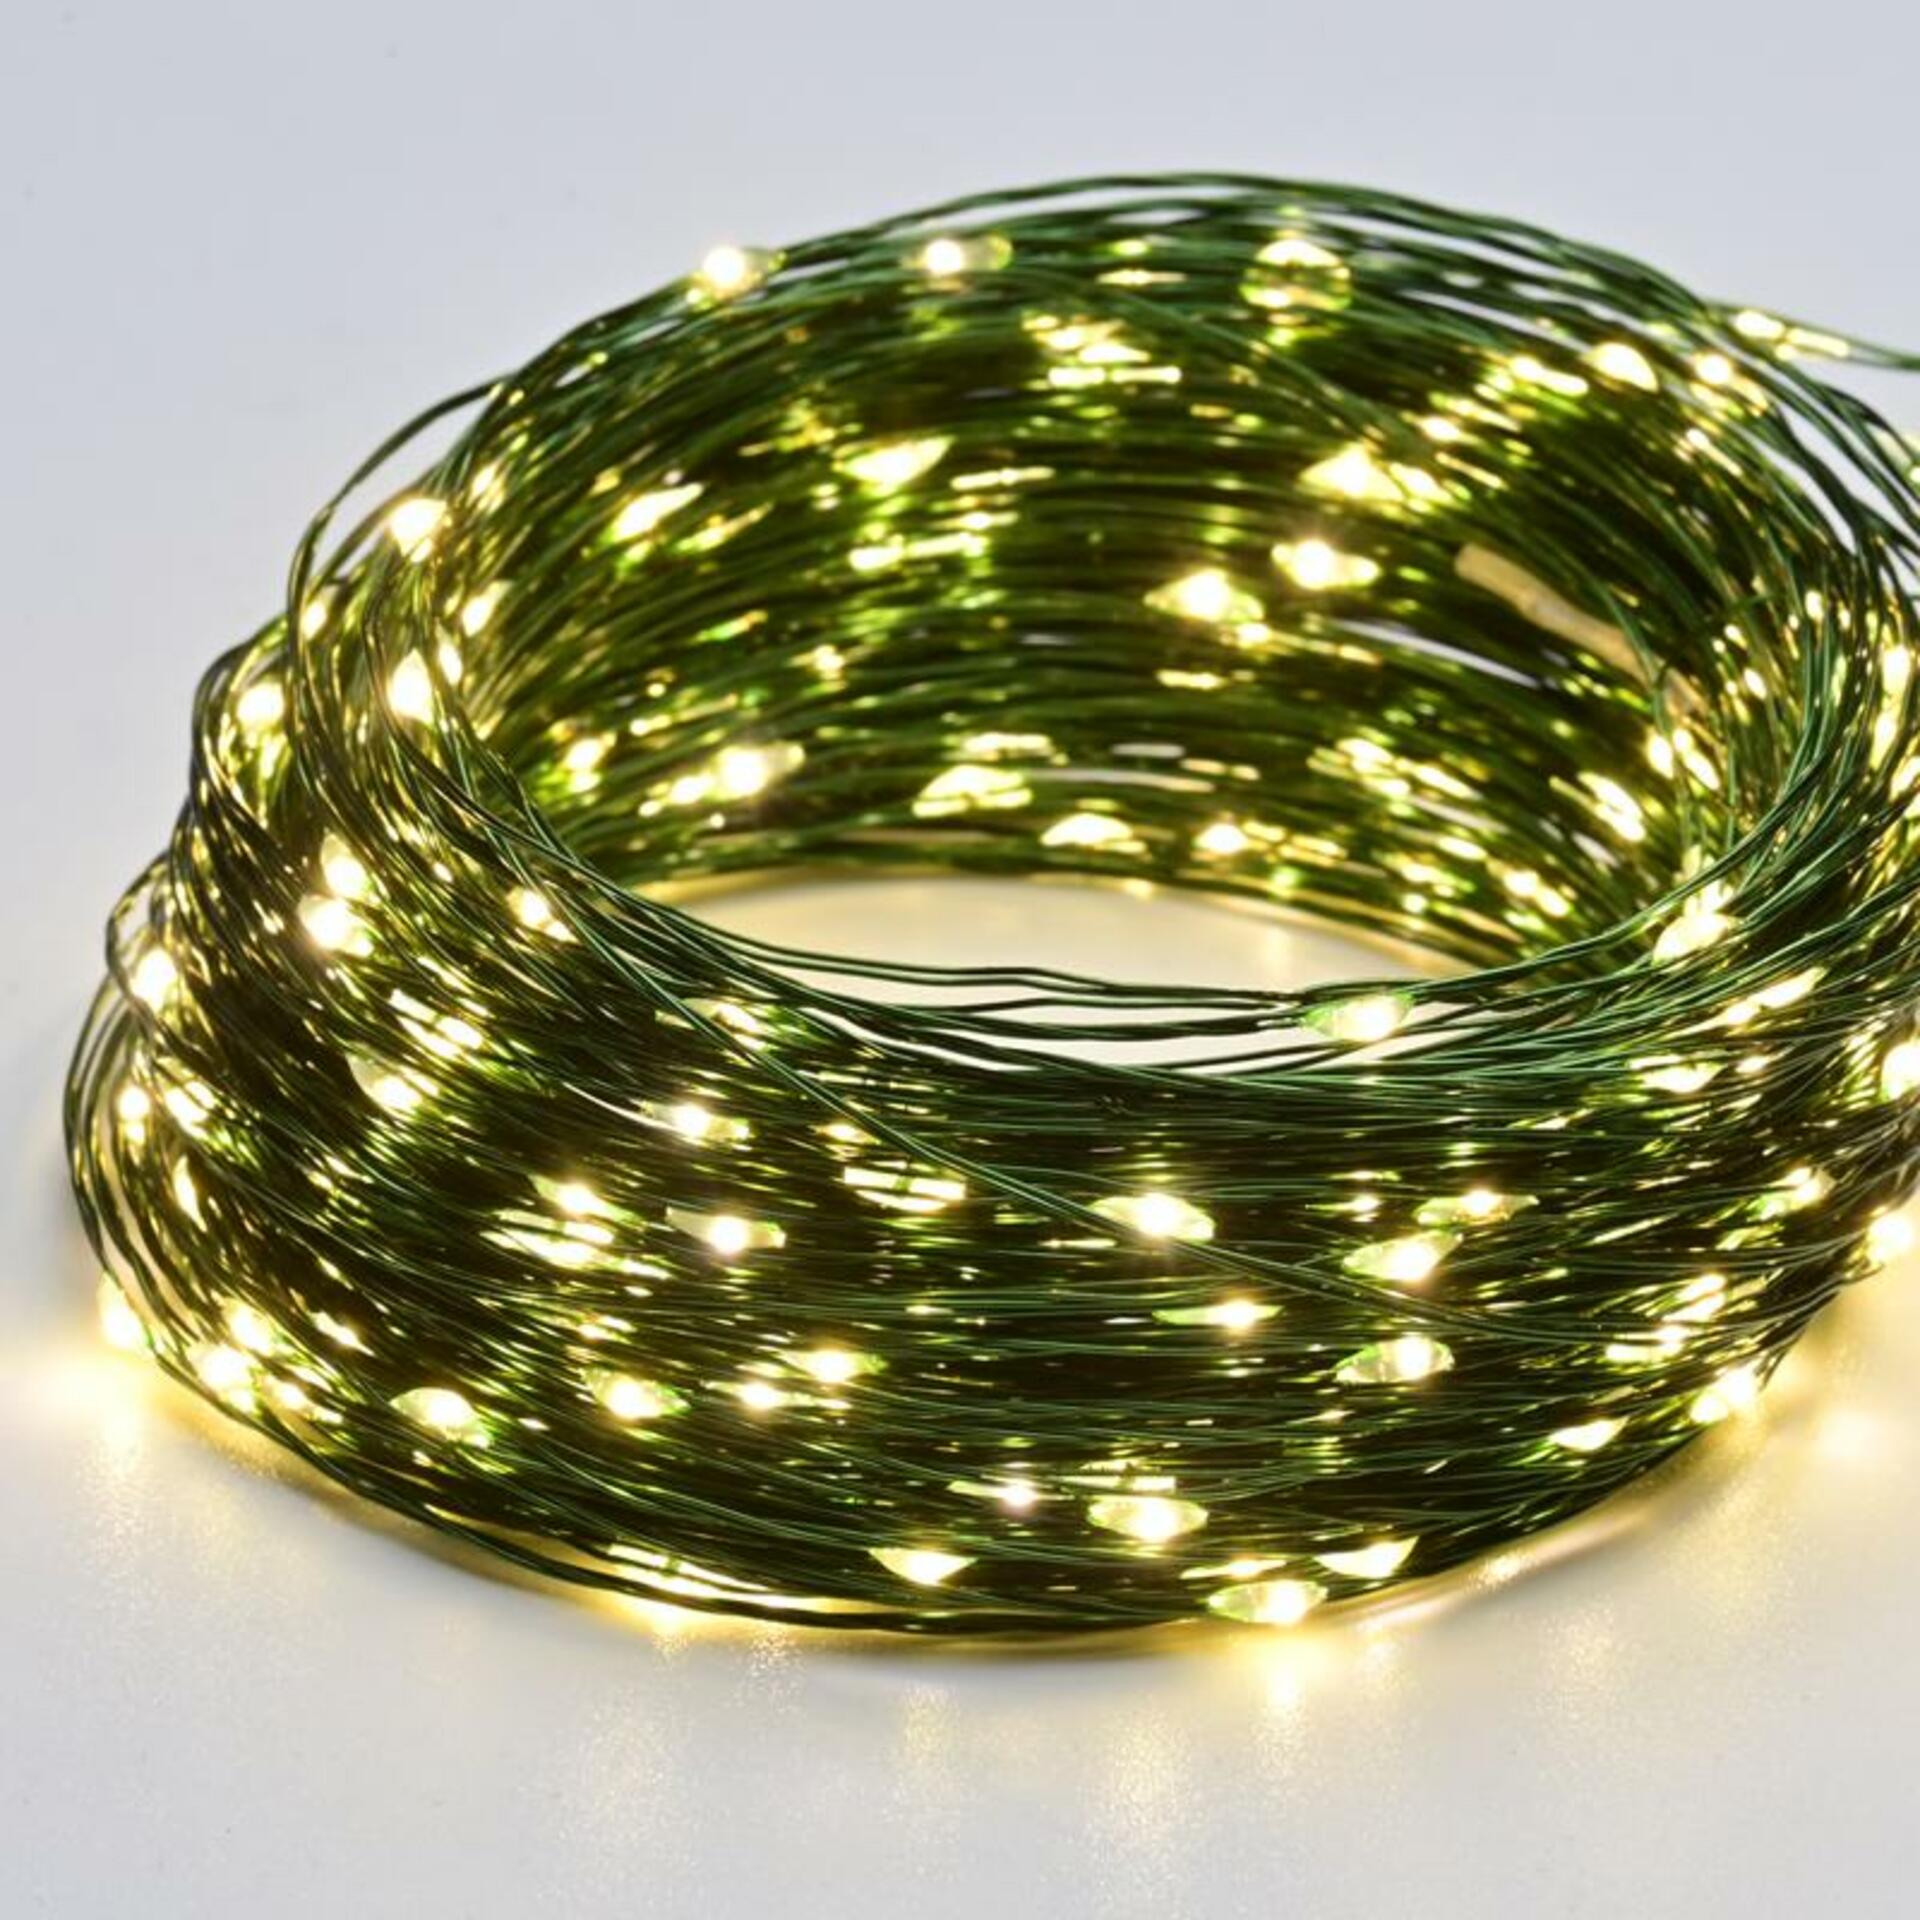 ACA Lighting 100 LED dekorační řetěz, WW, zelený měďený kabel, 220-240V + 8 funkcí, IP44, 10m+3m, 600mA X01100152